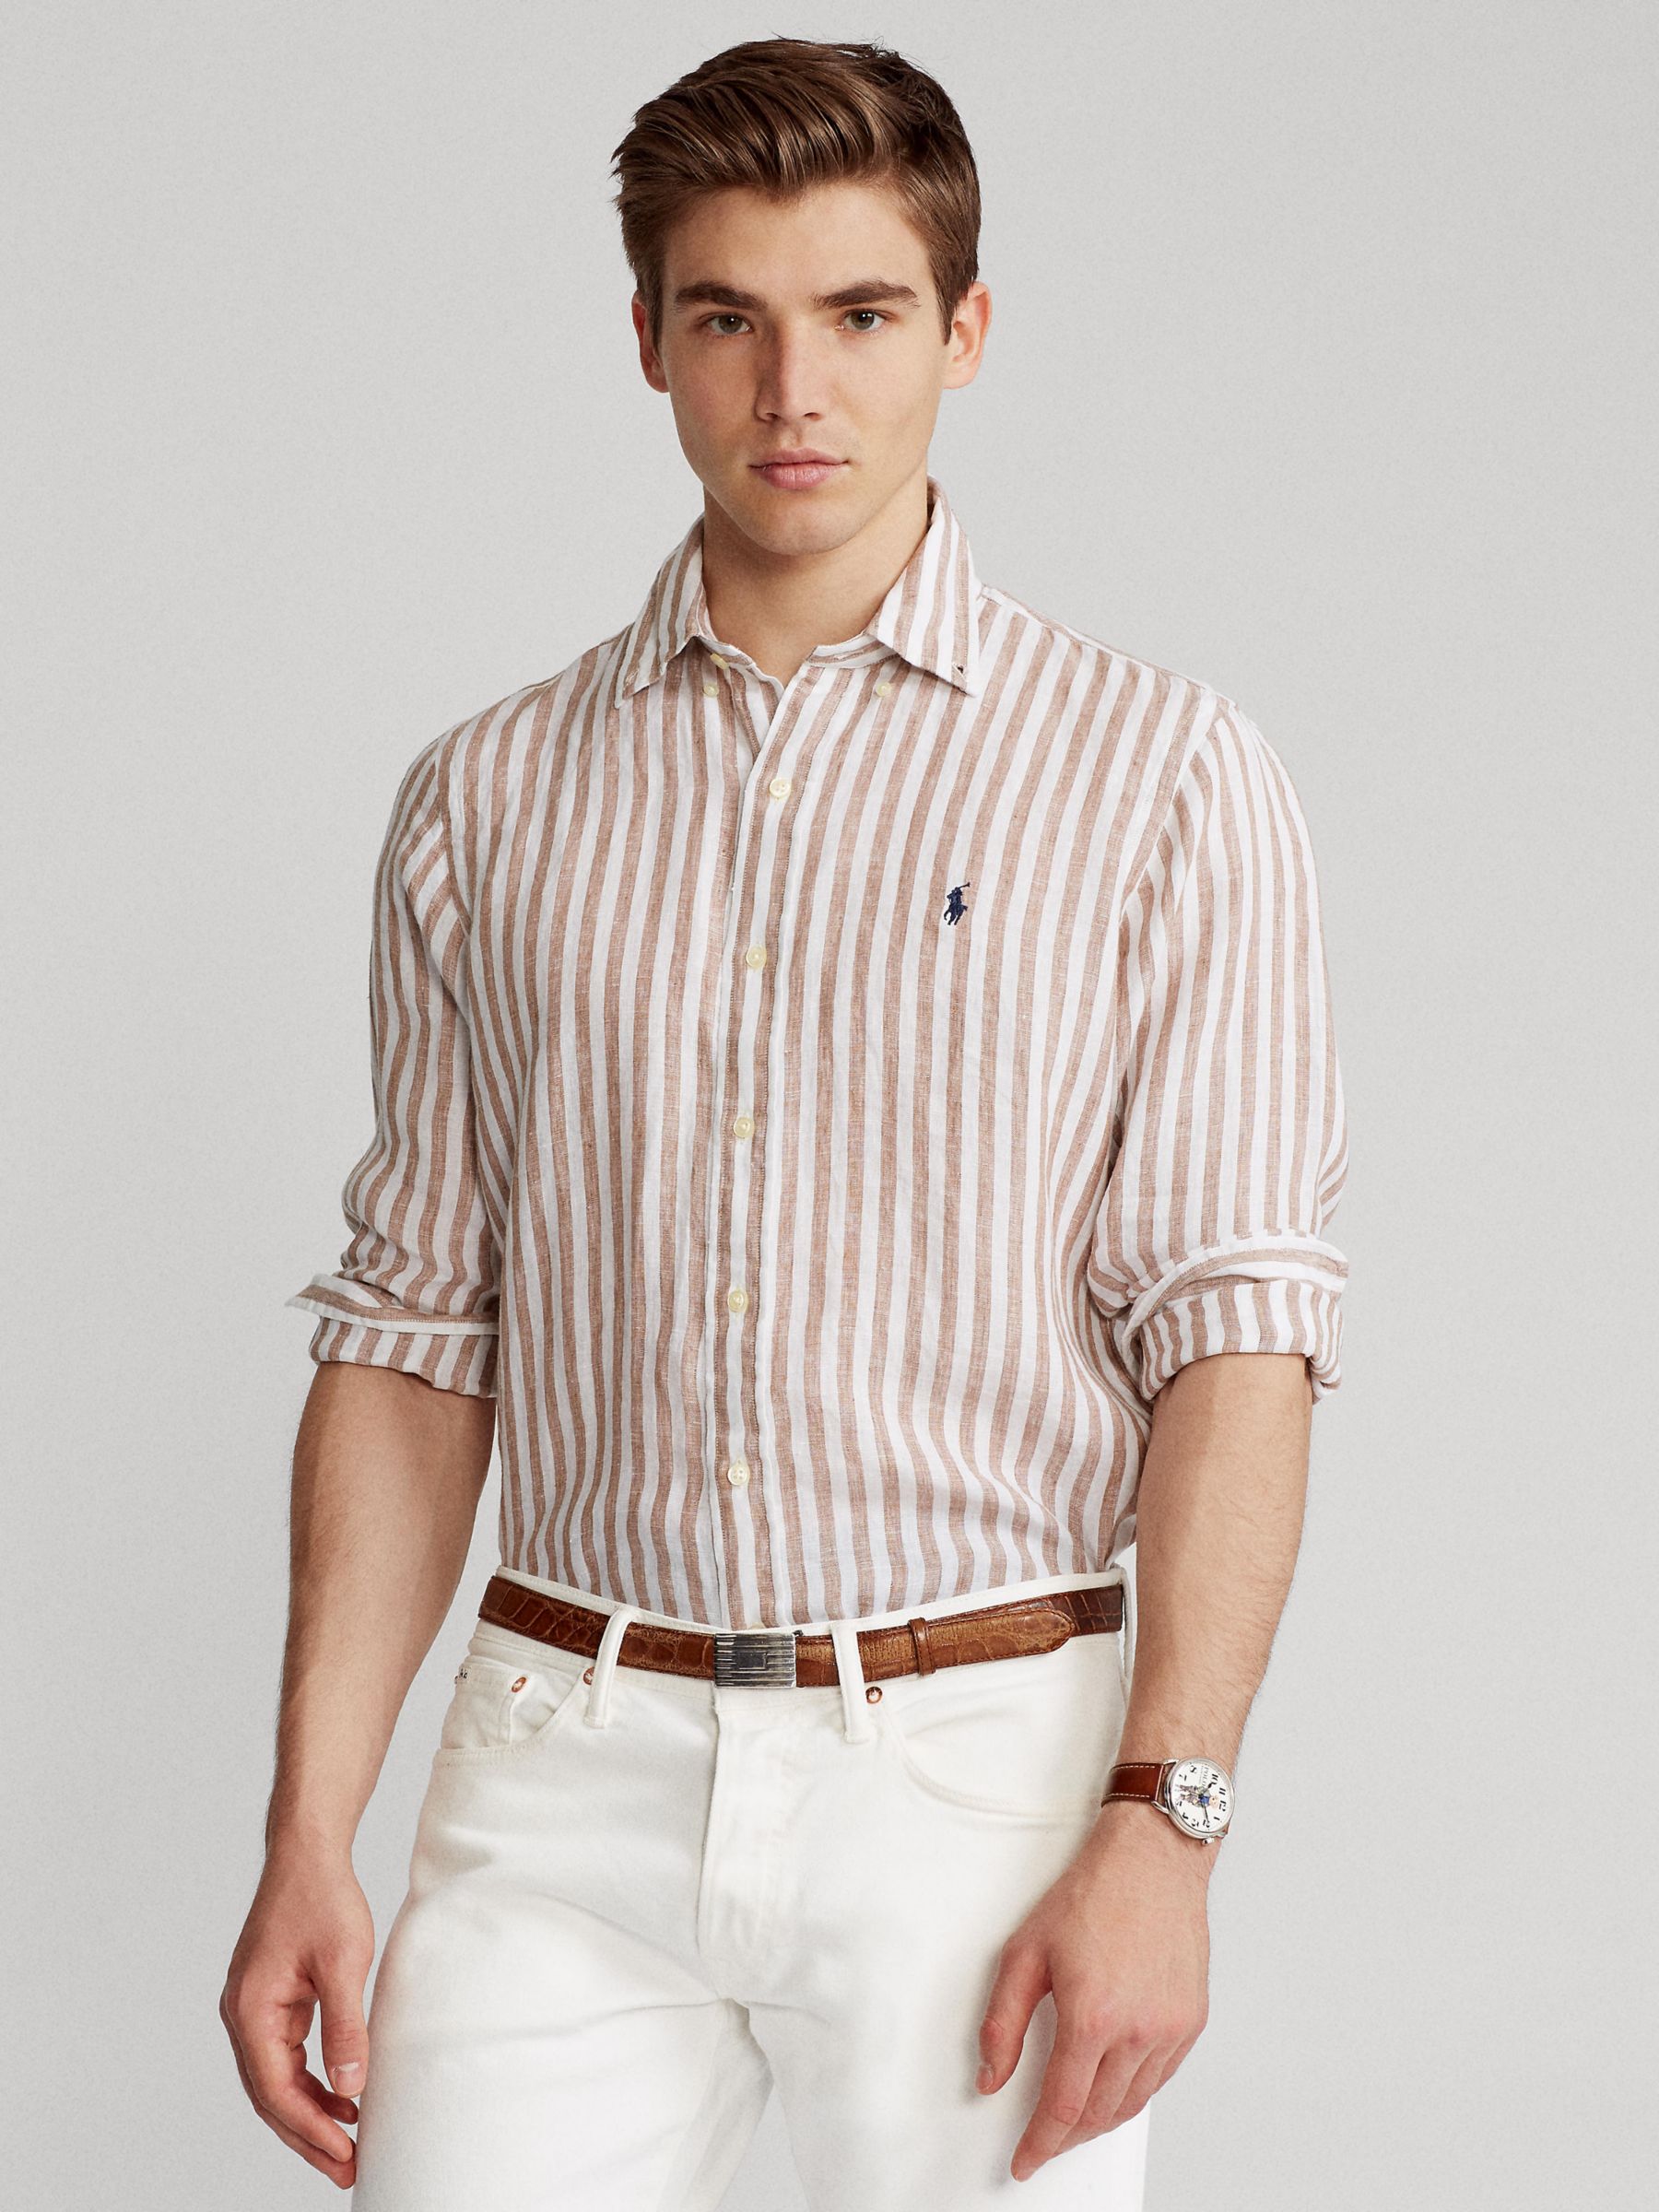 Ralph Lauren Stripe Linen Long Sleeve Shirt, Khaki/White, S